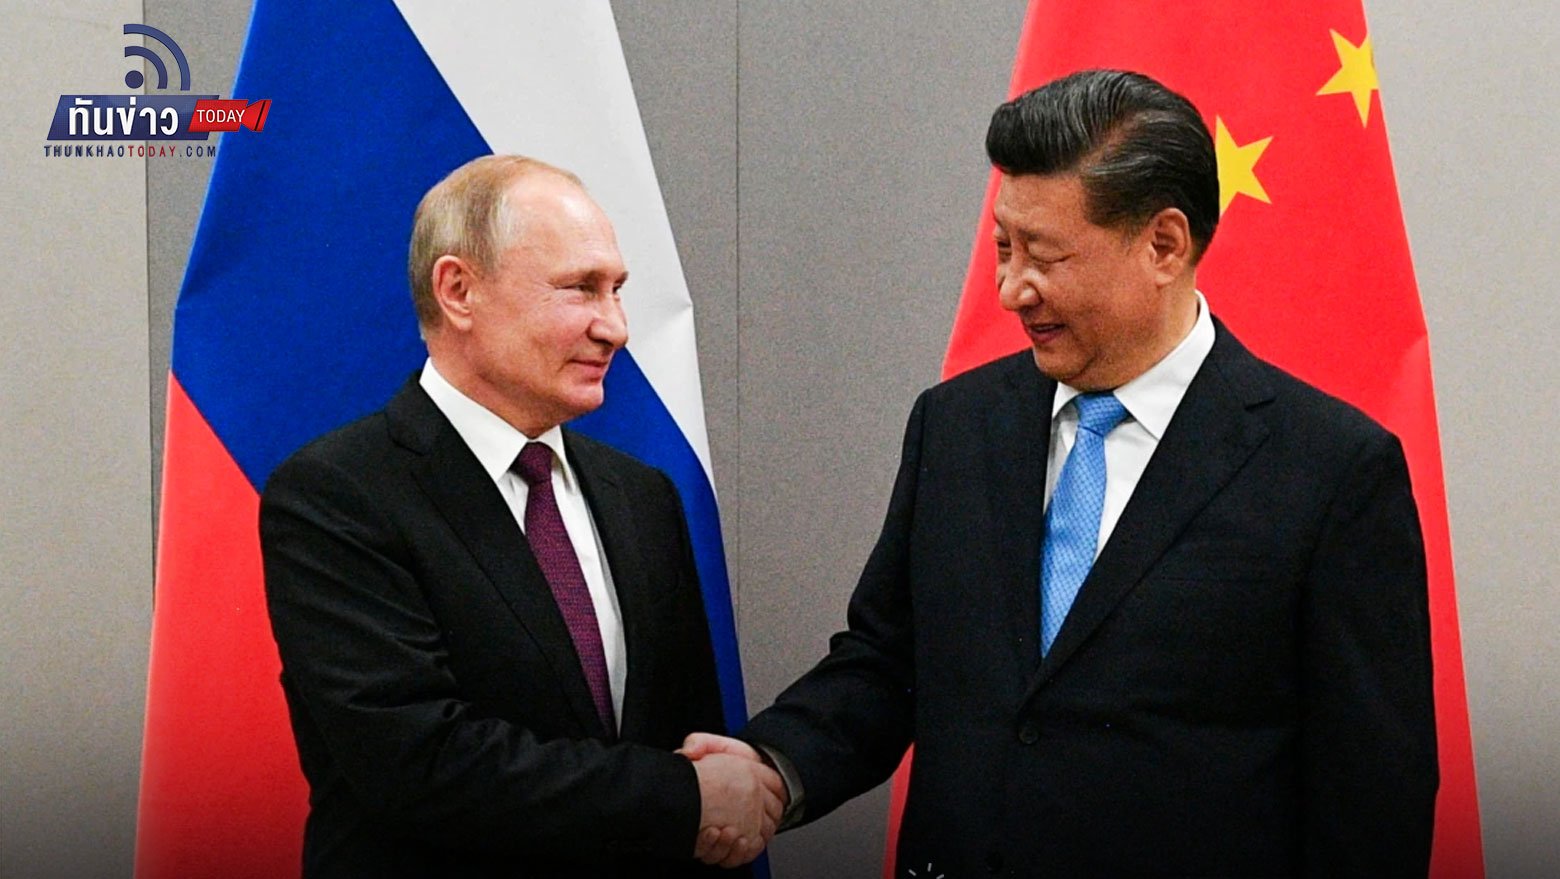 จีนยังหนุนรัสเซีย สหรัฐเตือนระวังเลือกผิดข้าง! ชาติตะวันตกรวมตัวกรุงเคียฟ